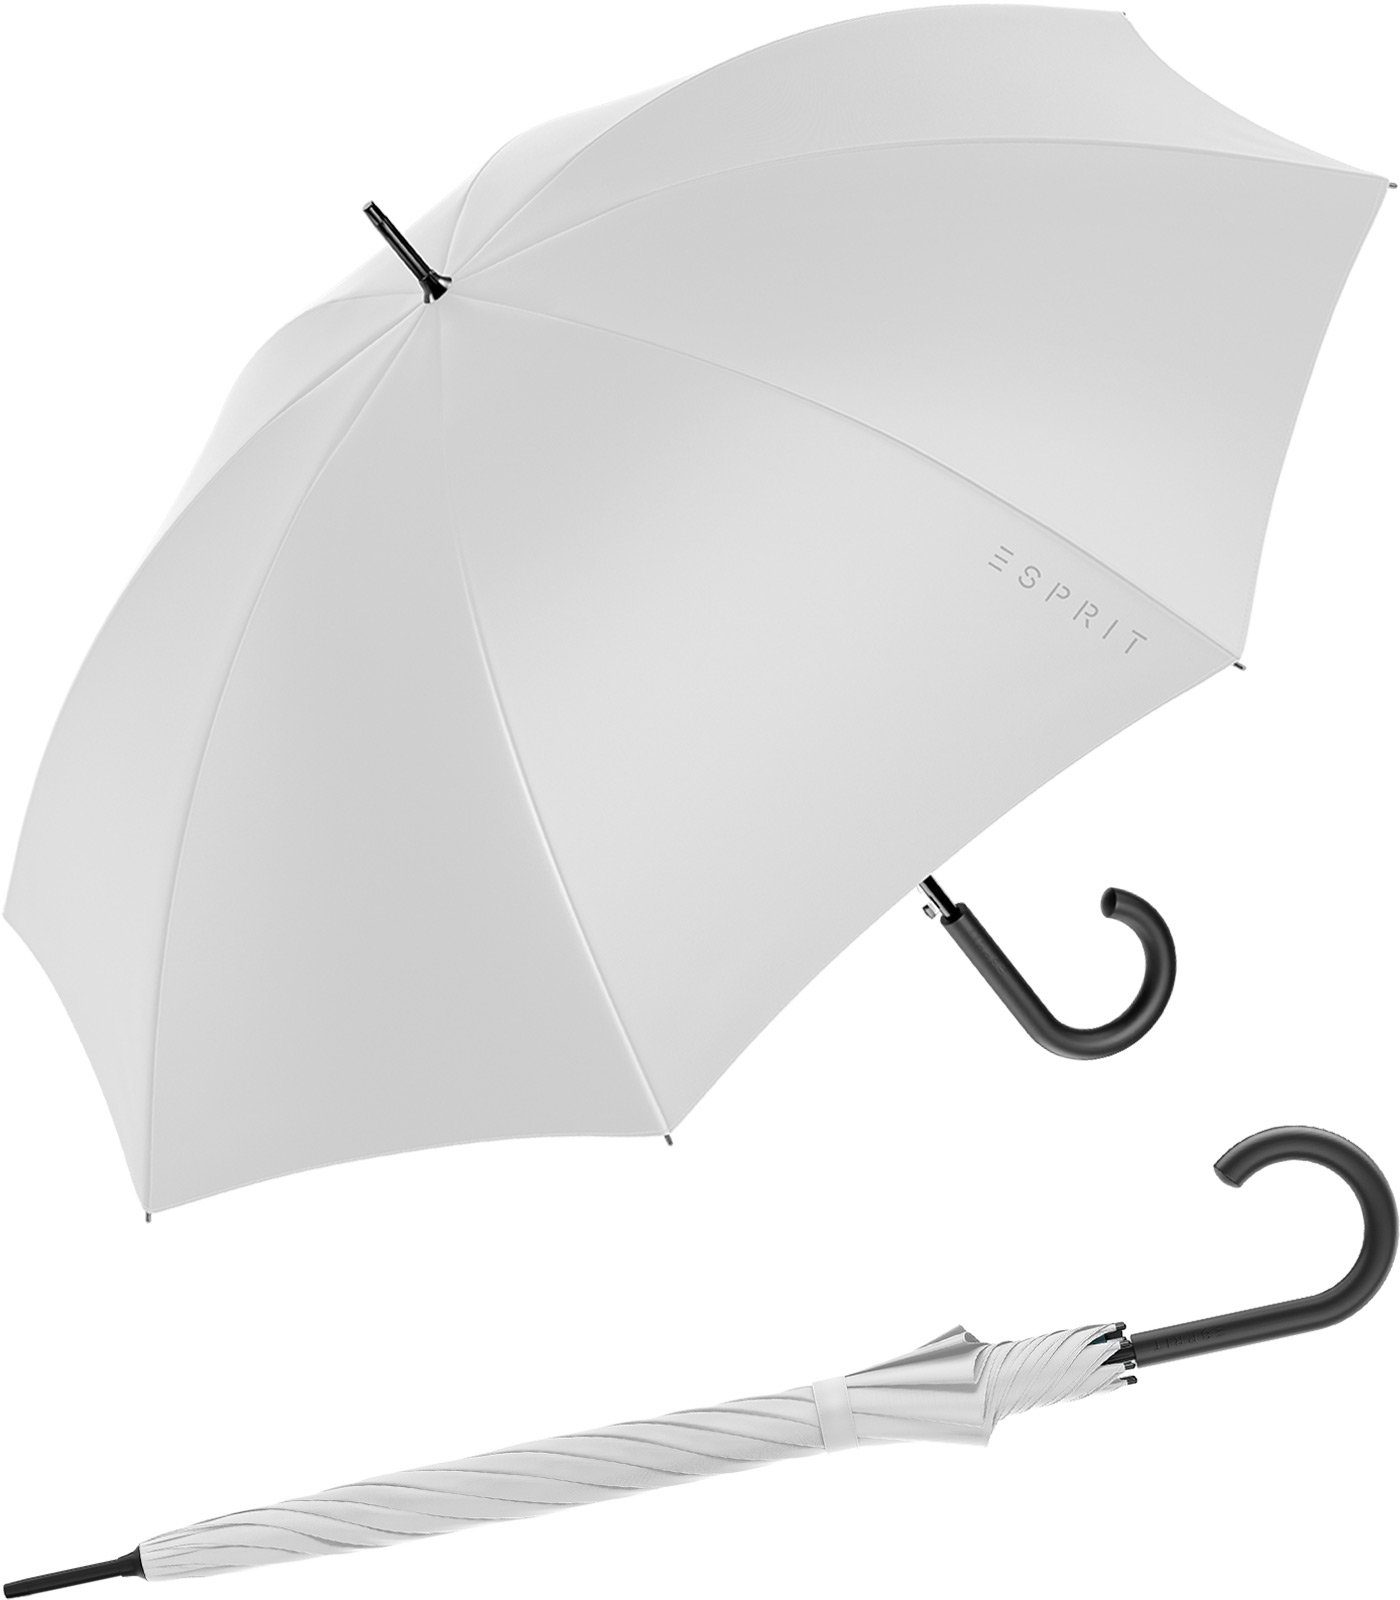 Esprit Langregenschirm Damen-Regenschirm mit Automatik FJ 2023, groß und stabil, in den Trendfarben alt-weiß